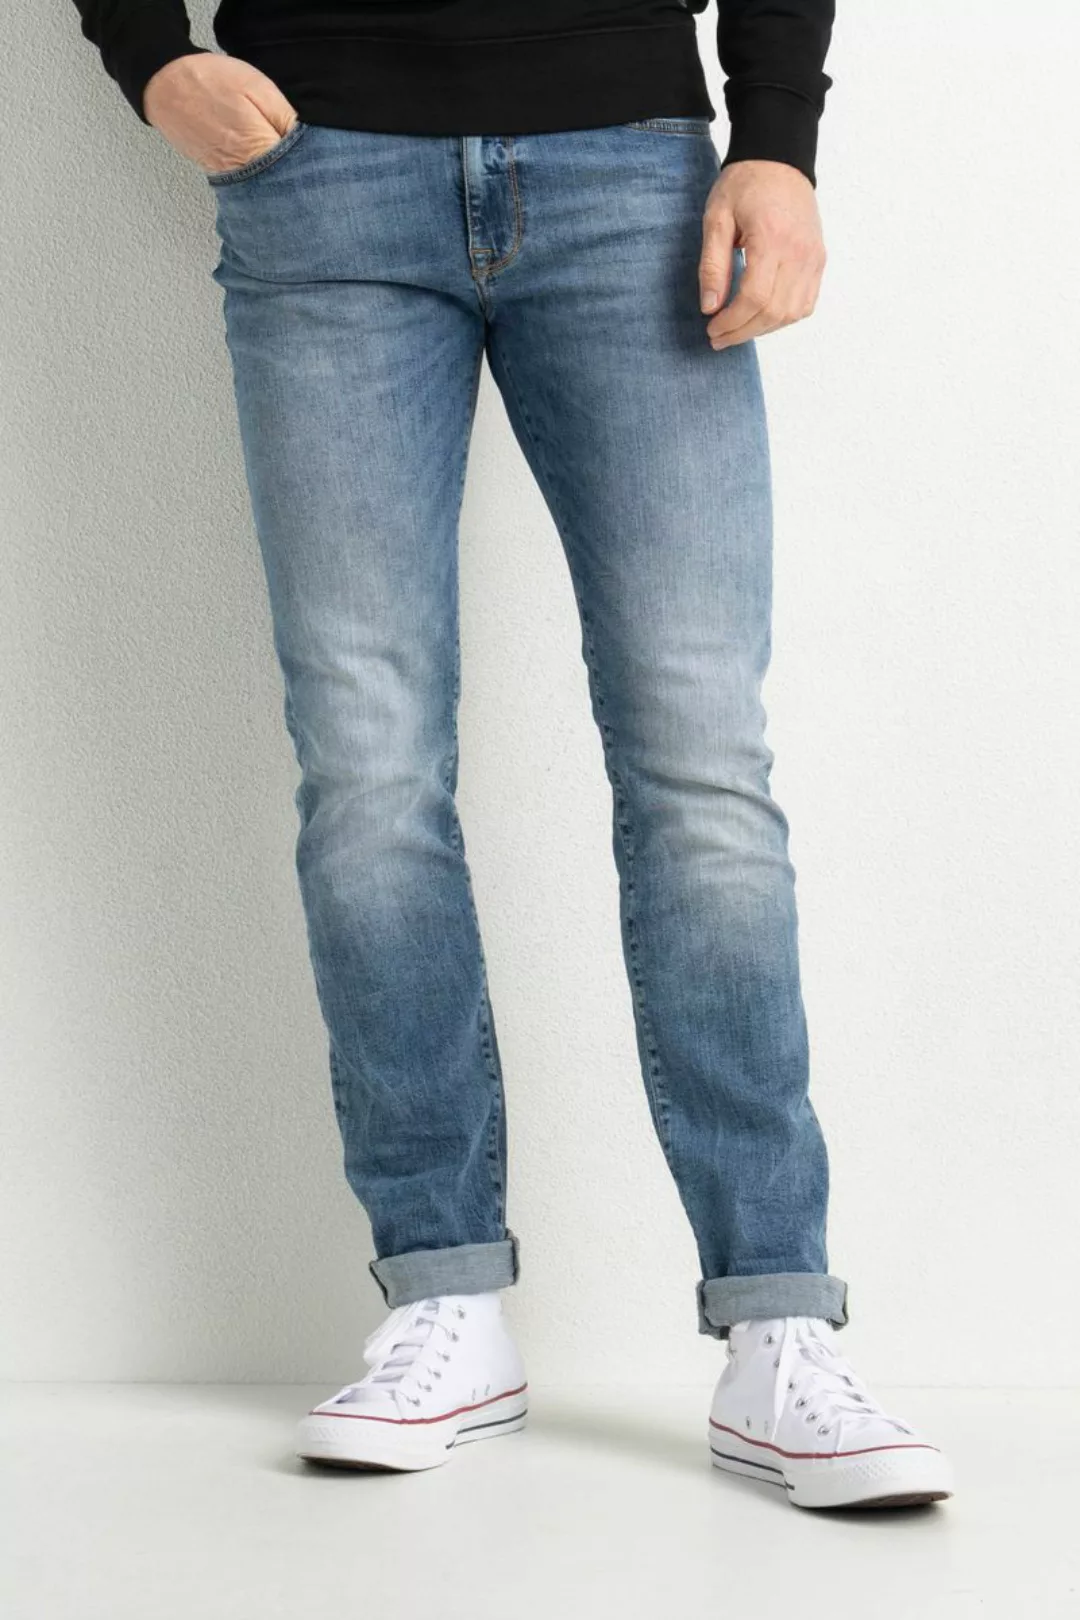 Petrol Seaham Jeans Indigo Blue - Größe W 34 - L 34 günstig online kaufen